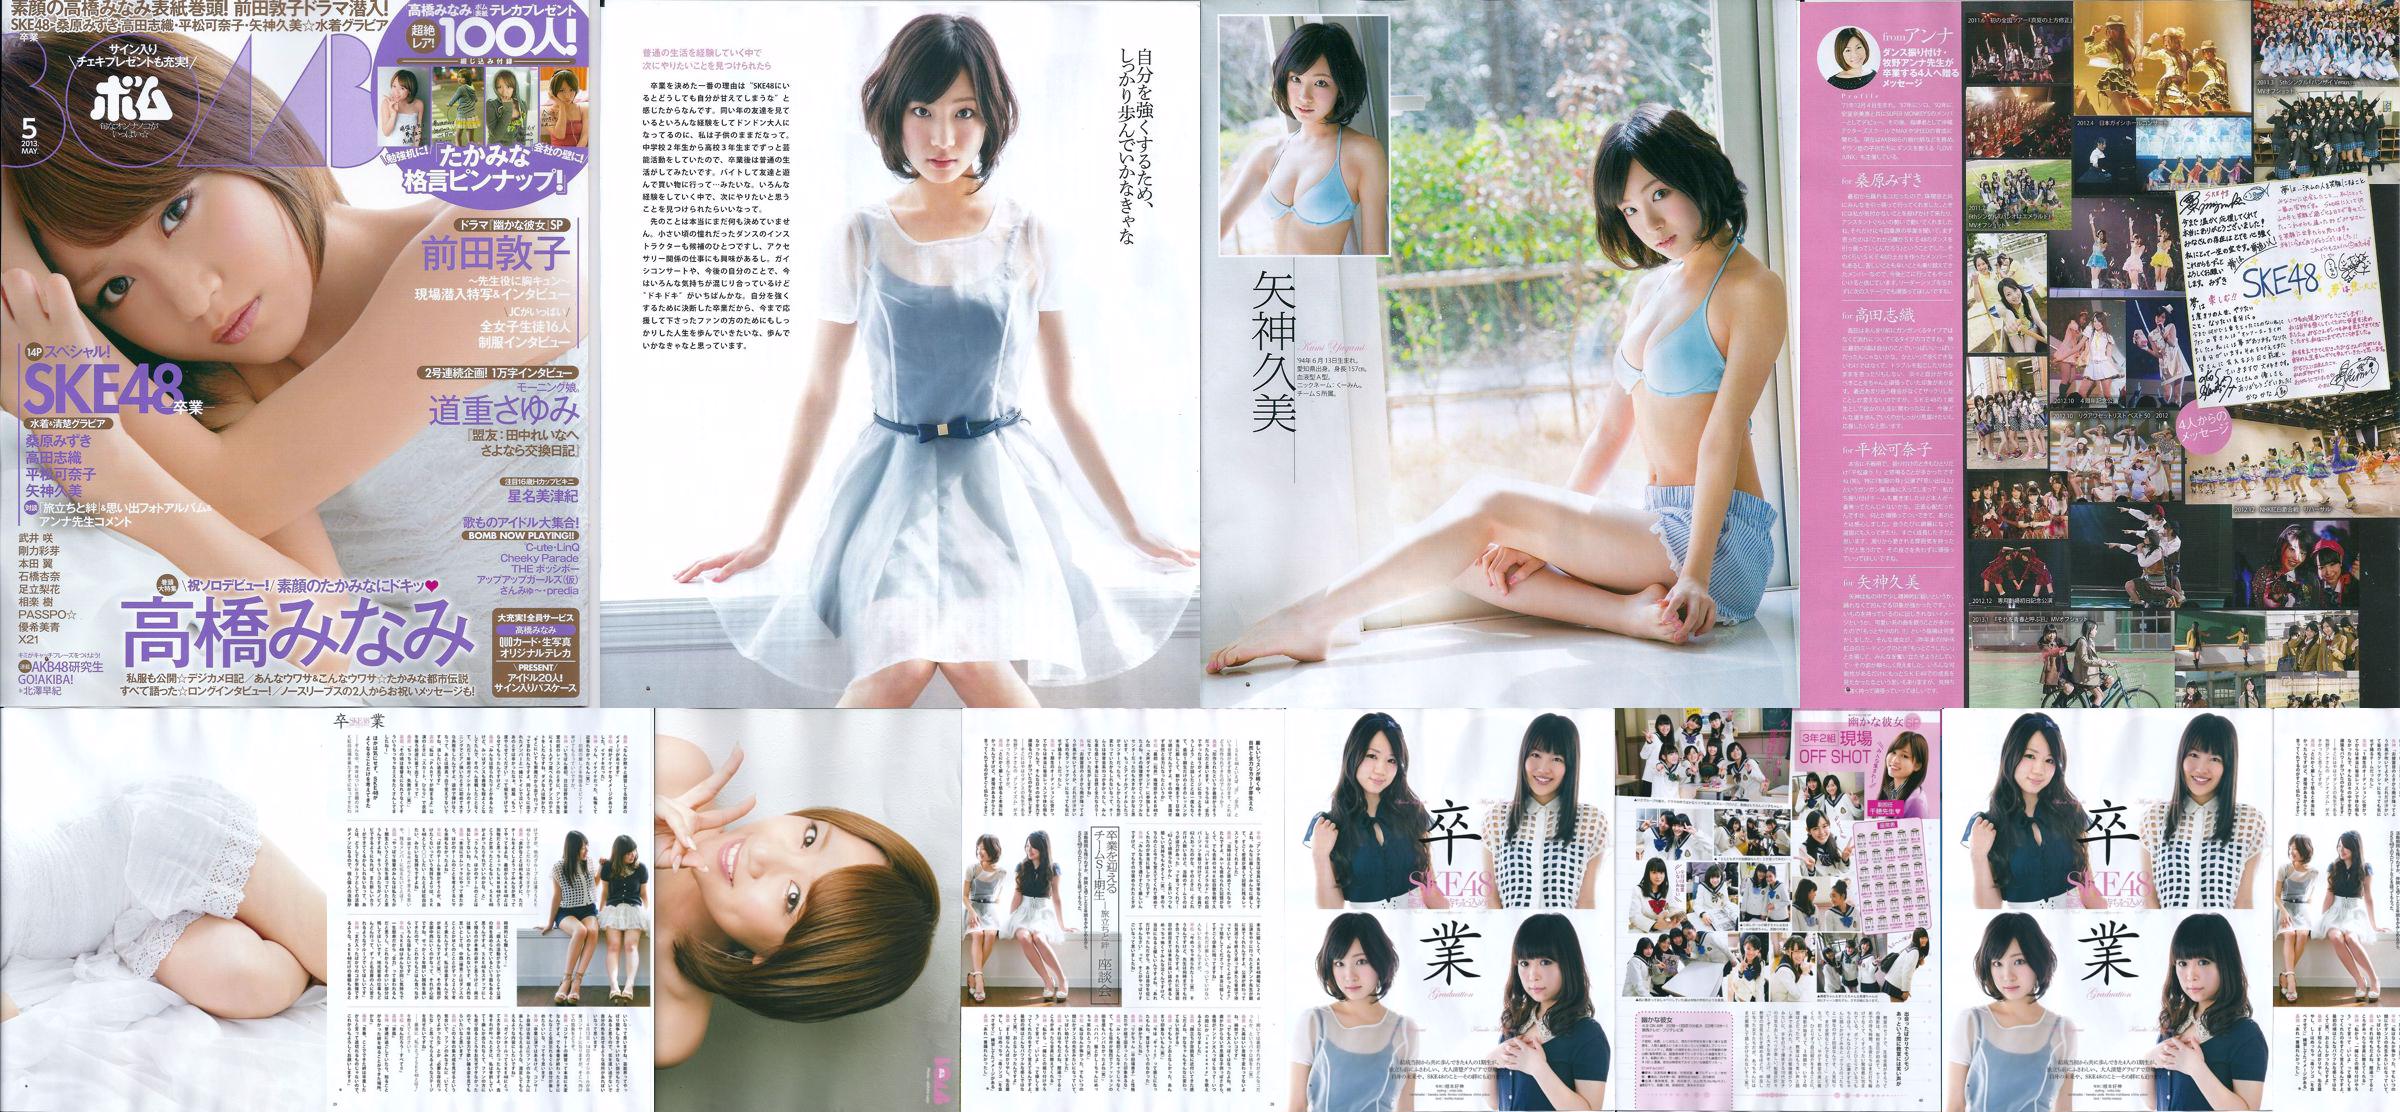 [Bomb Magazine] 2013 No.05 Kumi Yagami Minami Takahashi Atsuko Maeda Foto No.29e8a3 Página 1